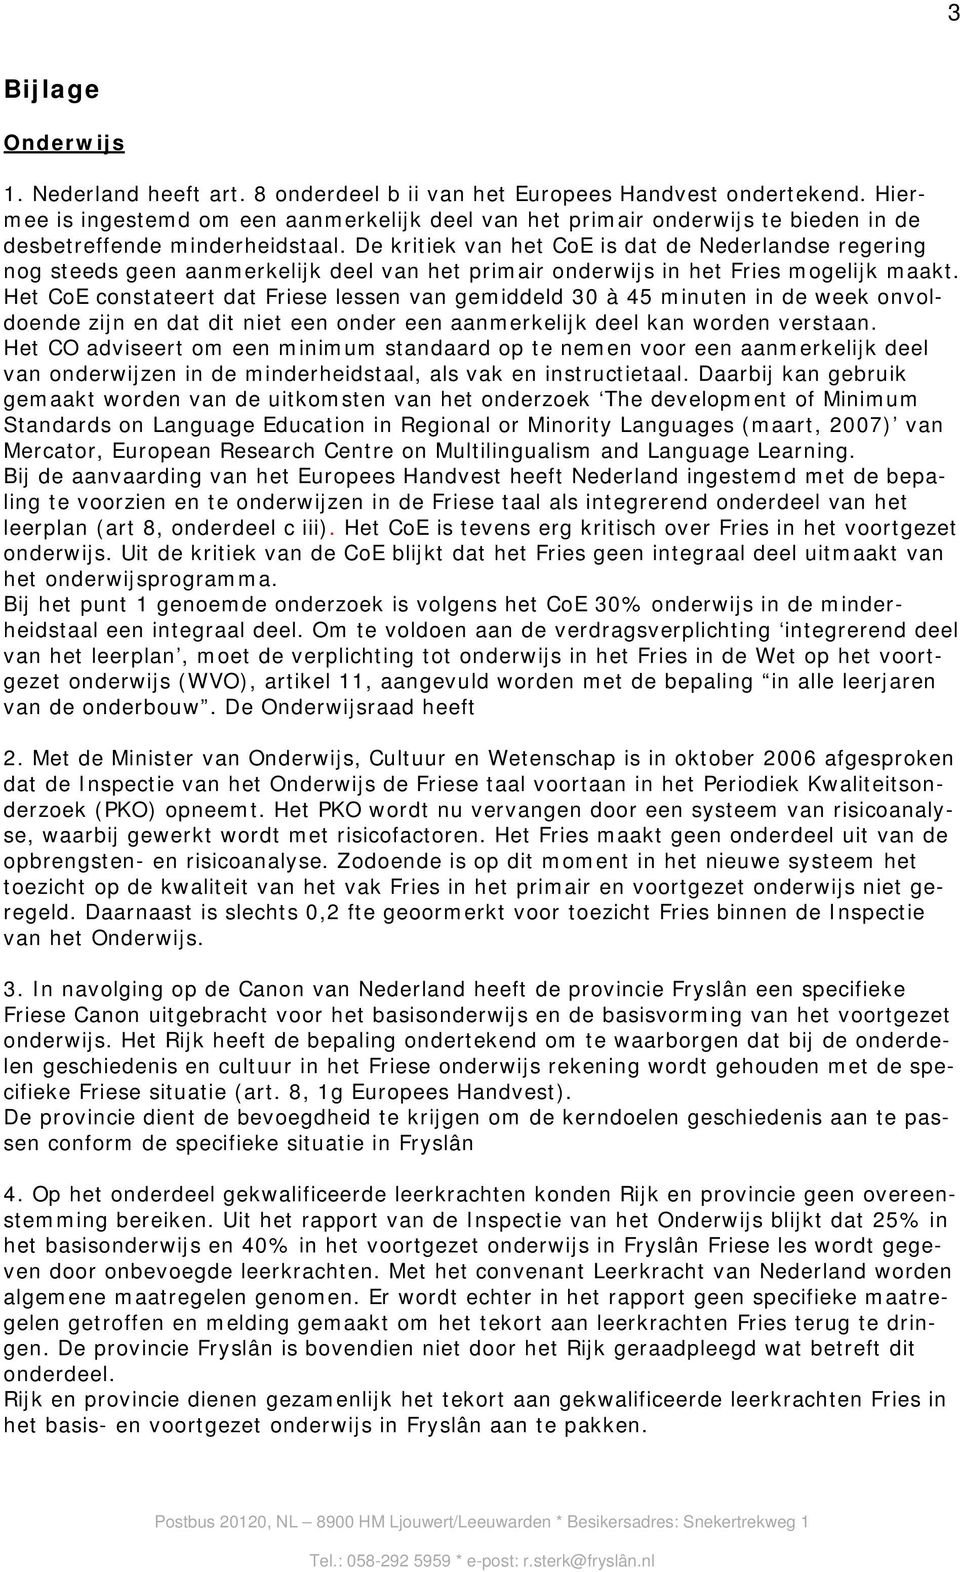 De kritiek van het CoE is dat de Nederlandse regering nog steeds geen aanmerkelijk deel van het primair onderwijs in het Fries mogelijk maakt.